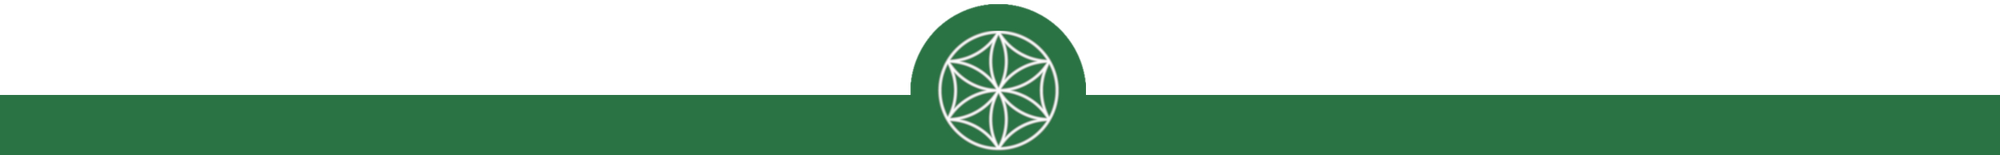 Biora logo half circle